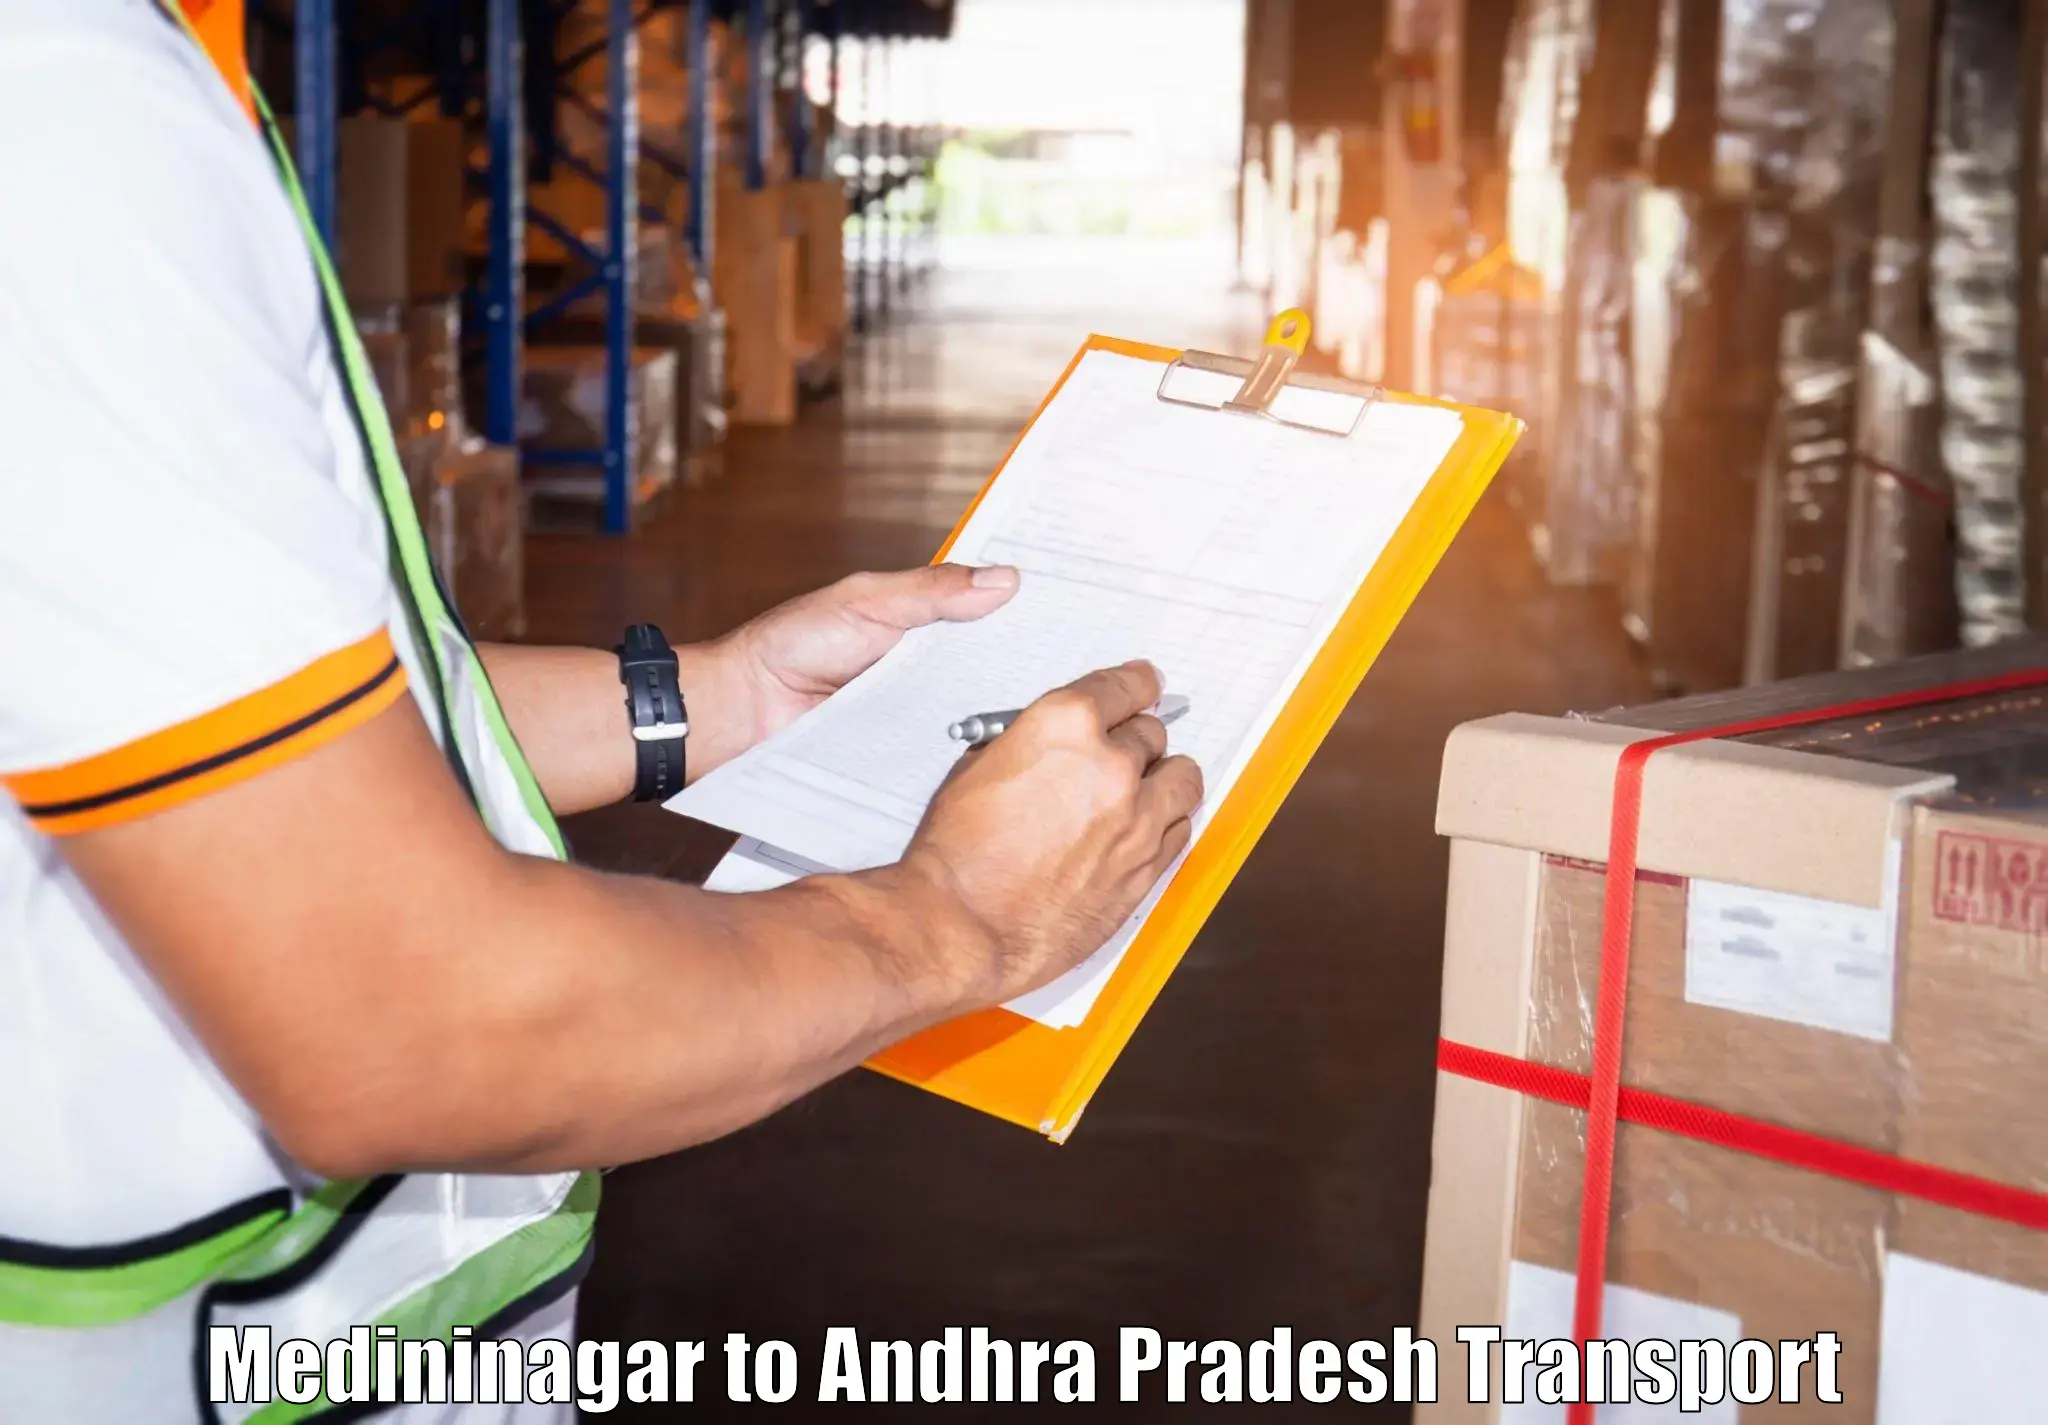 Land transport services Medininagar to Hindupur